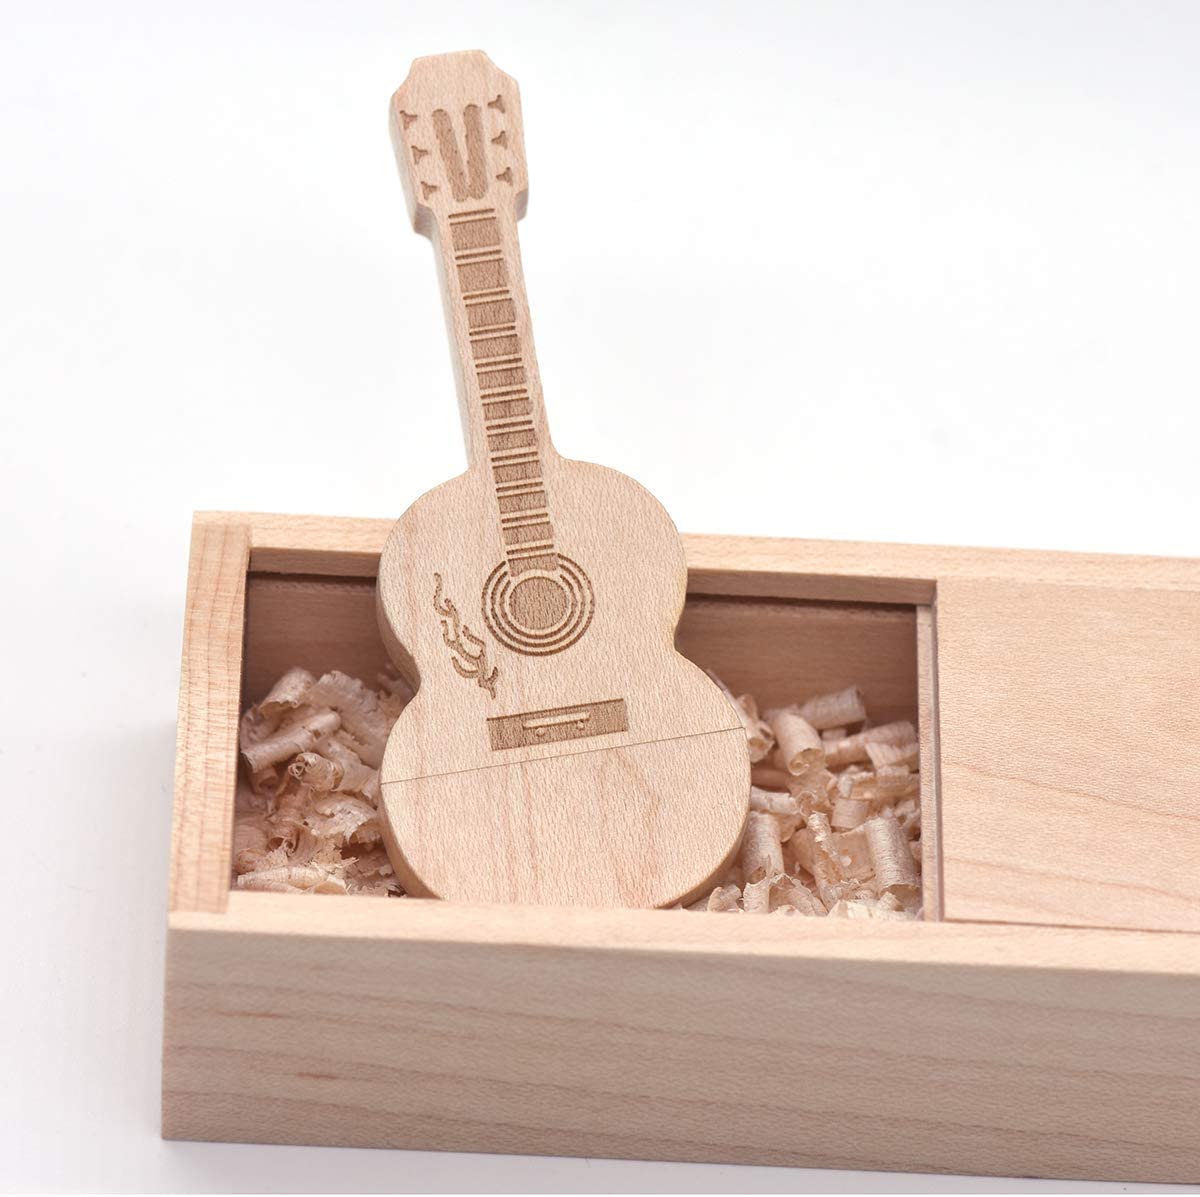 ออกแบบ Wood USB รุ่น Guitar ไม้ ที่มีรูปแบบและรูปทรงเครื่องดนตรี 4